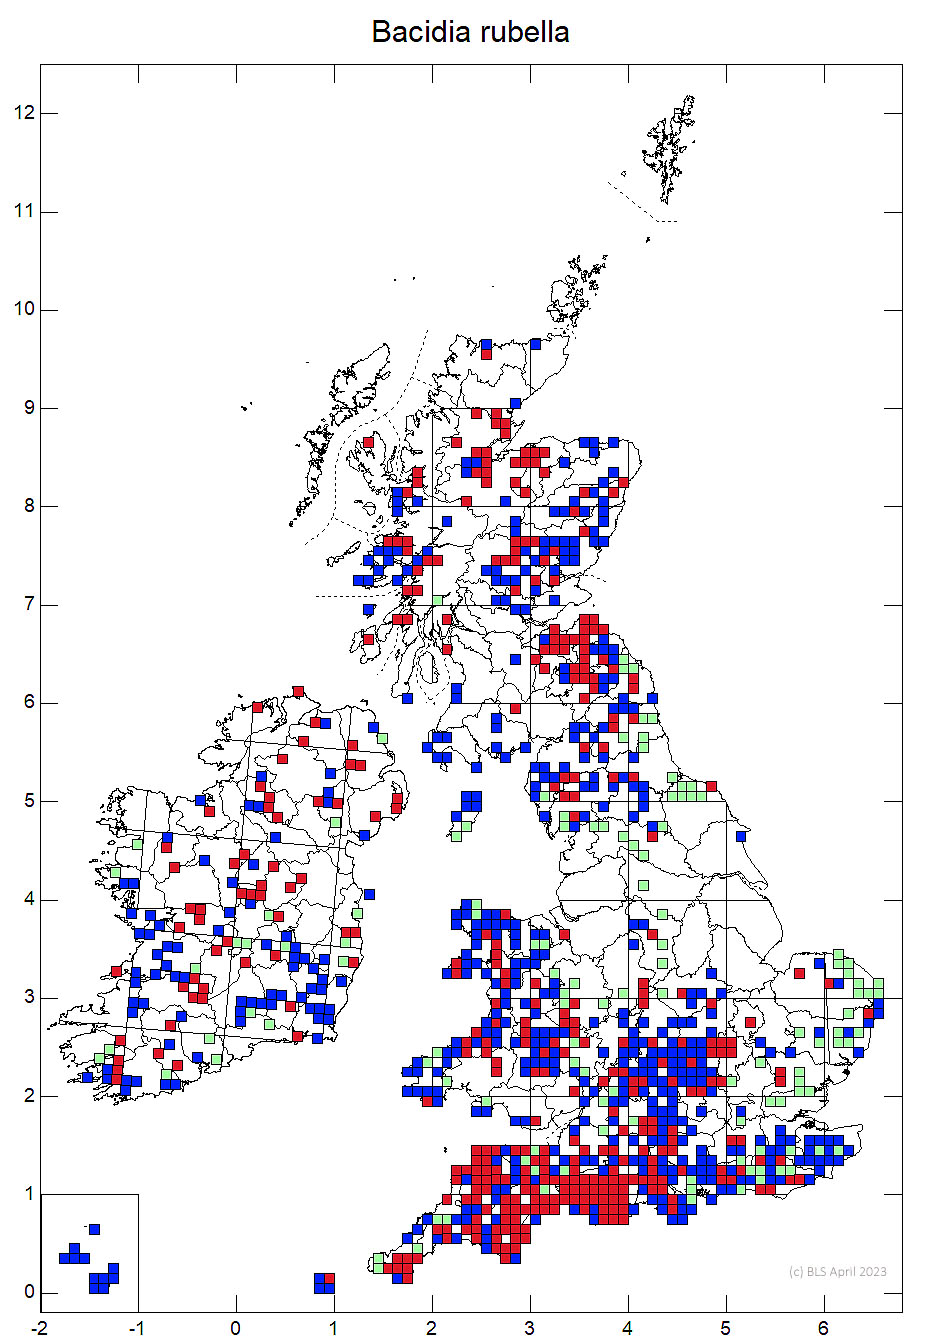 Bacidia rubella 10km sq distribution map